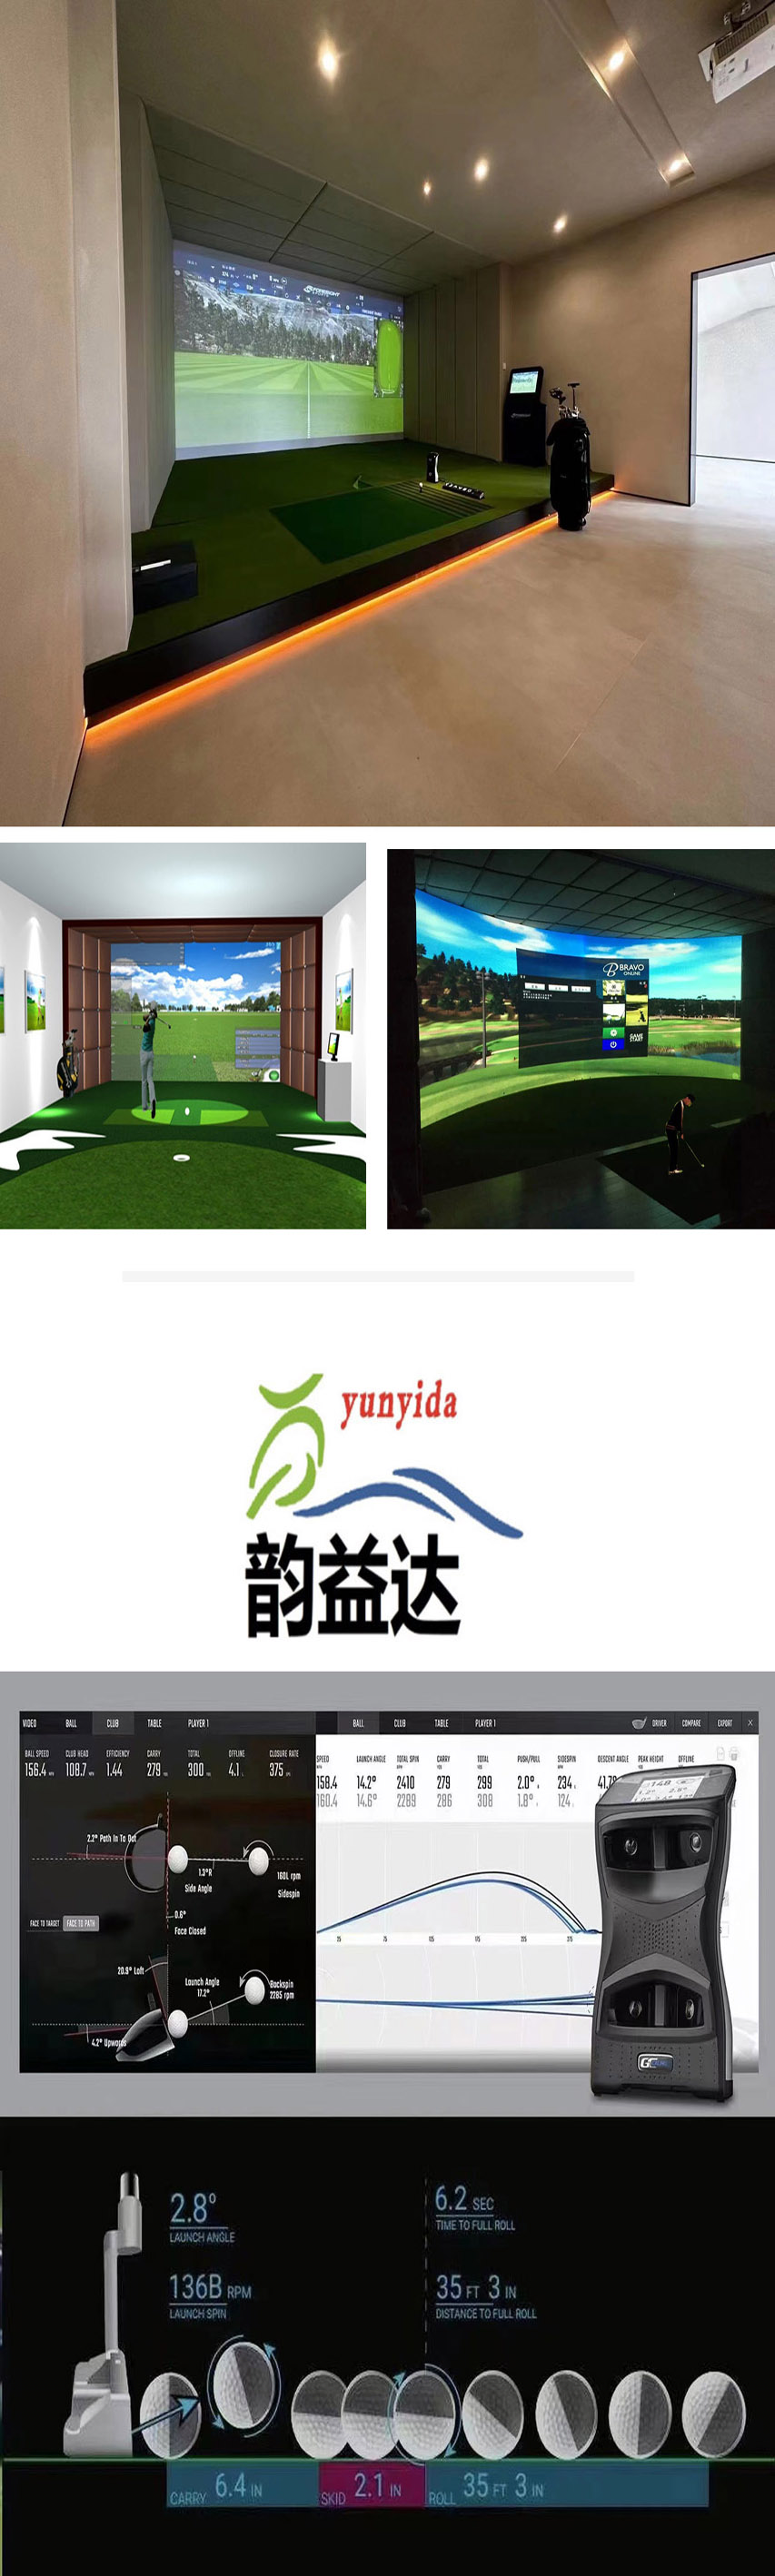 室内高尔夫模拟练习场 02.jpg